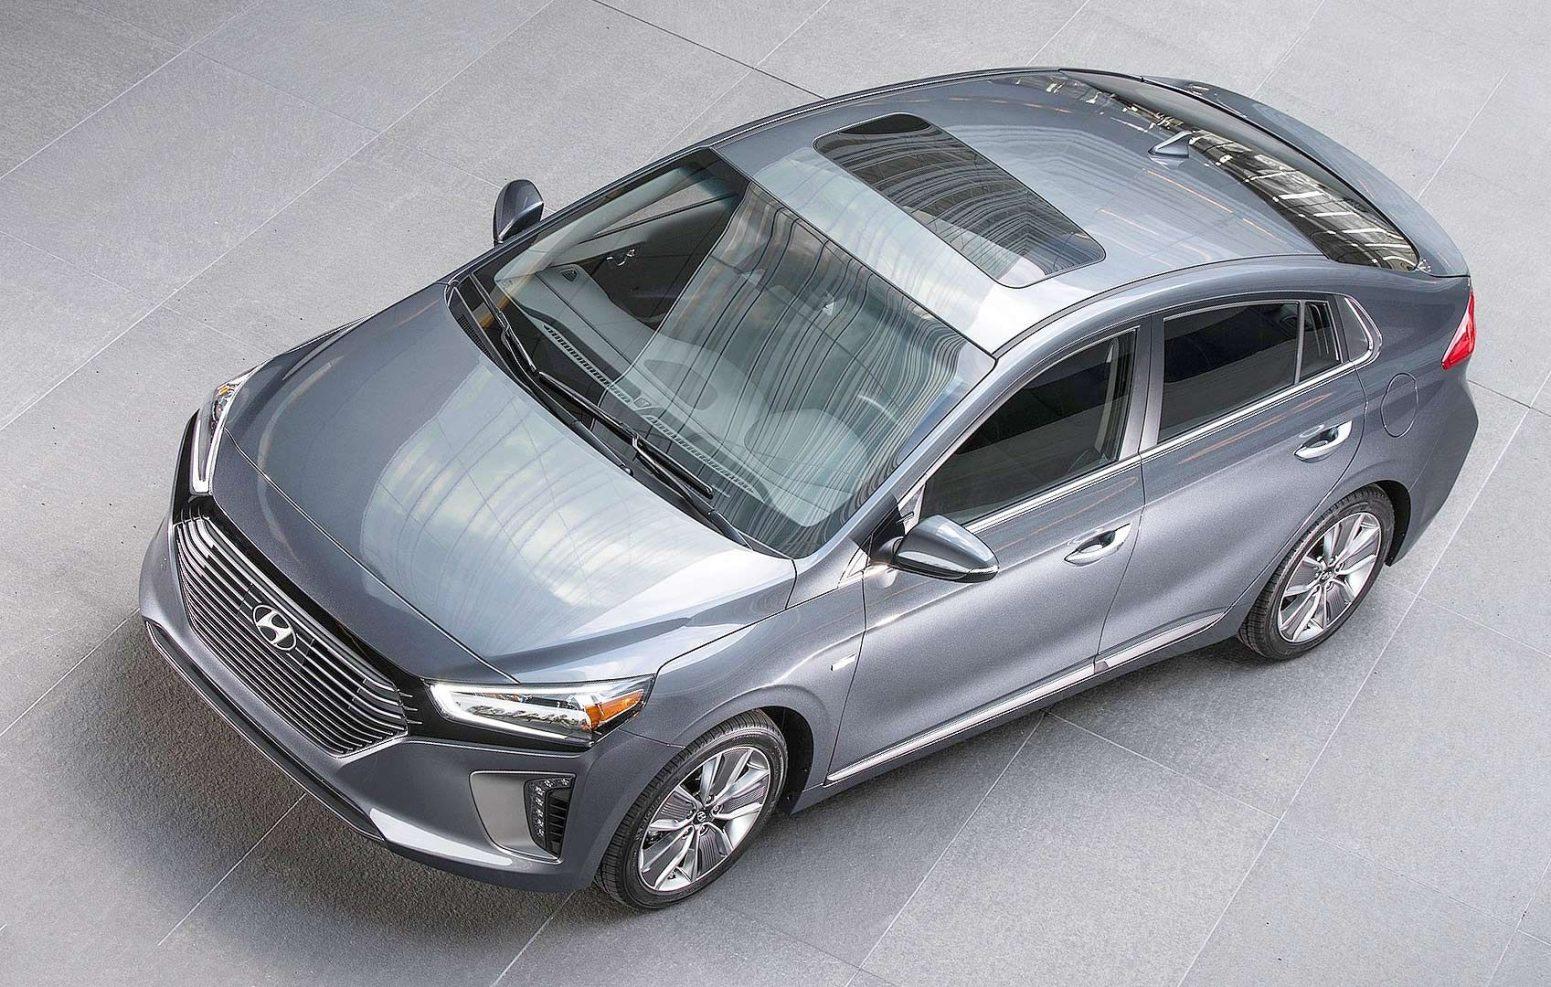 Hyundai Ioniq Exterior High Resolution Wallpaper. Master Car